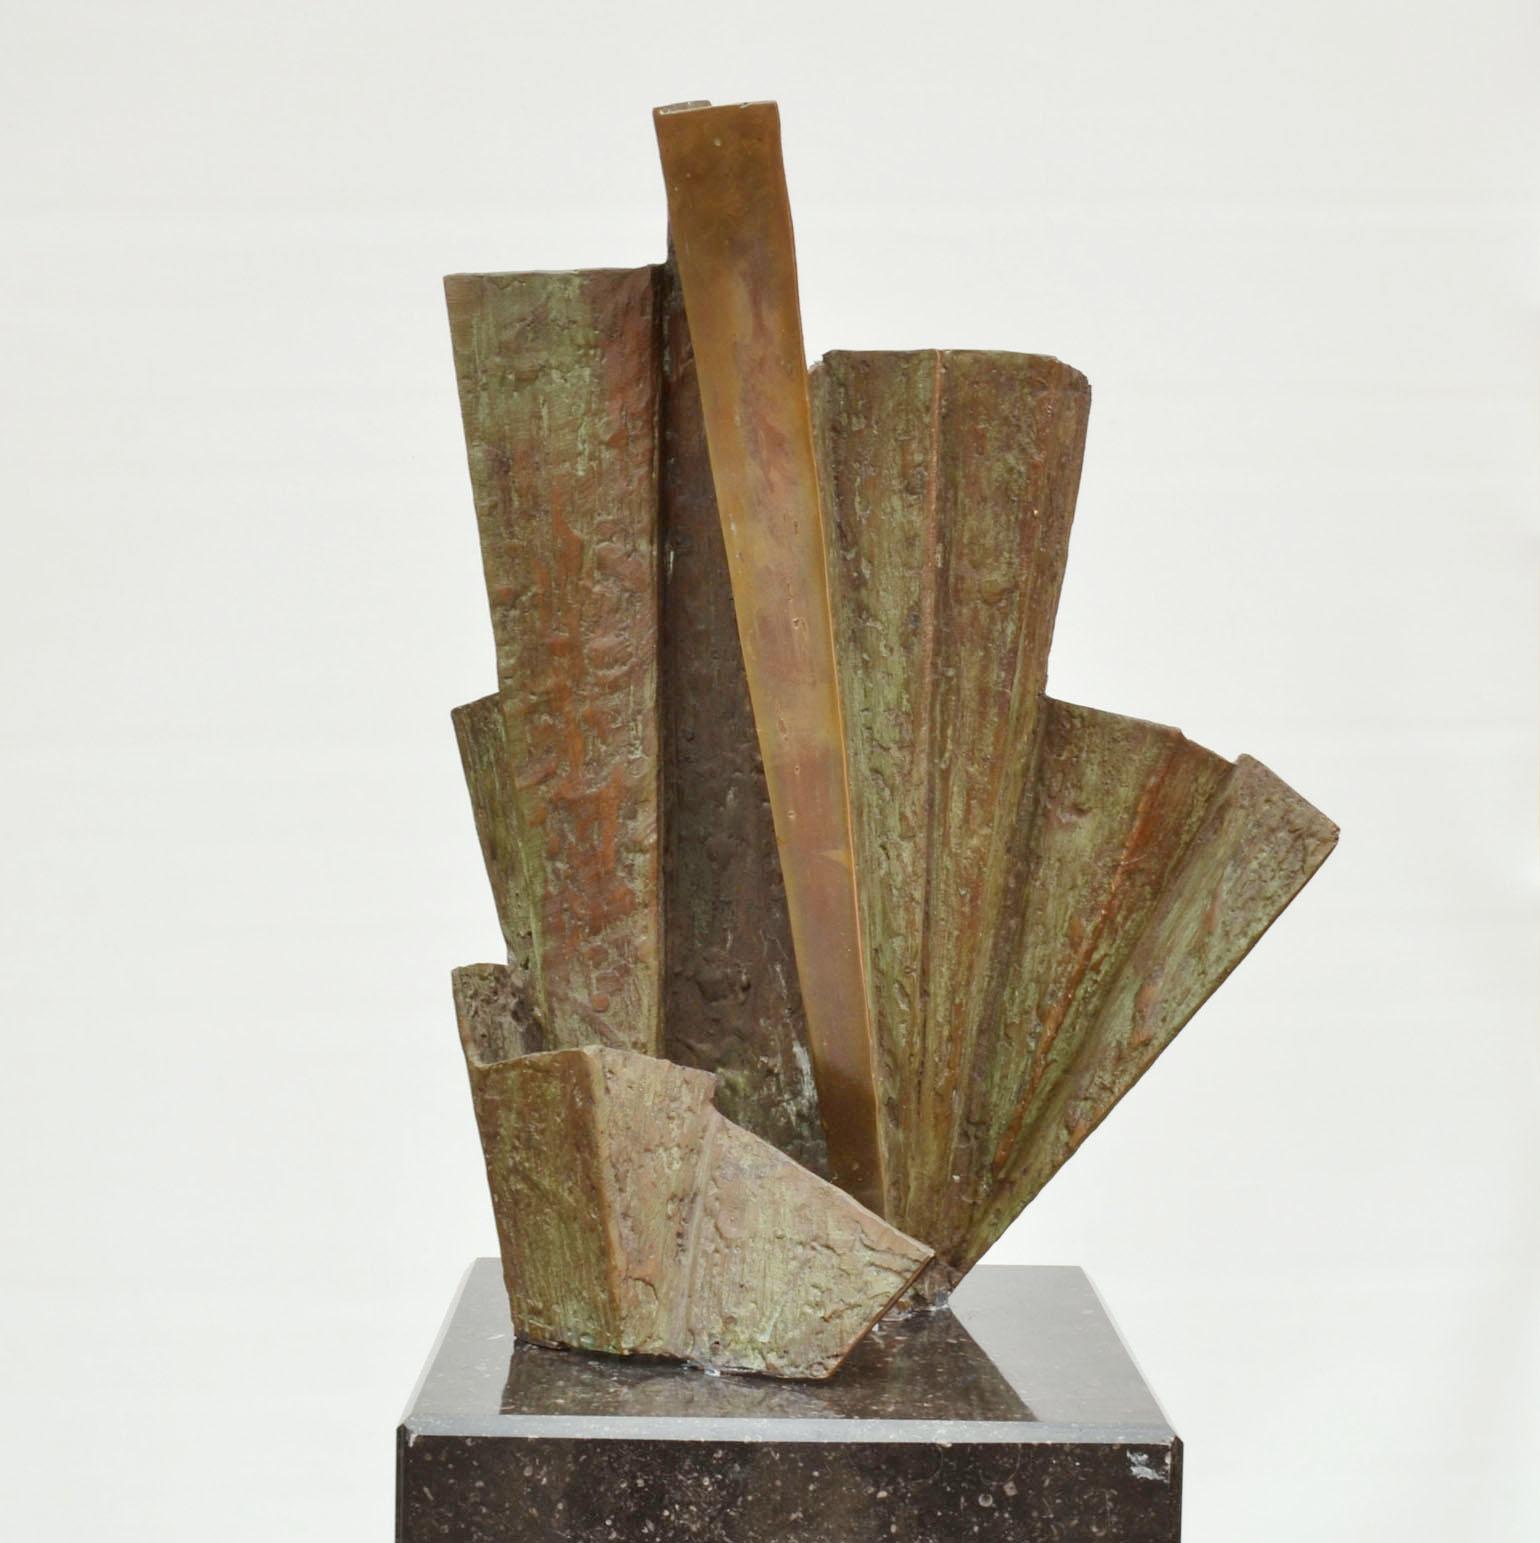 Eine von zwei abstrakten Skulpturen des niederländischen Künstlers Rien Goené (1929-2013) um 1980, signiert. Die asymmetrische, ziehharmonikaförmige Bronzeskulptur ist mit einer hellgrünen Patina versehen. An den Stellen, an denen sie